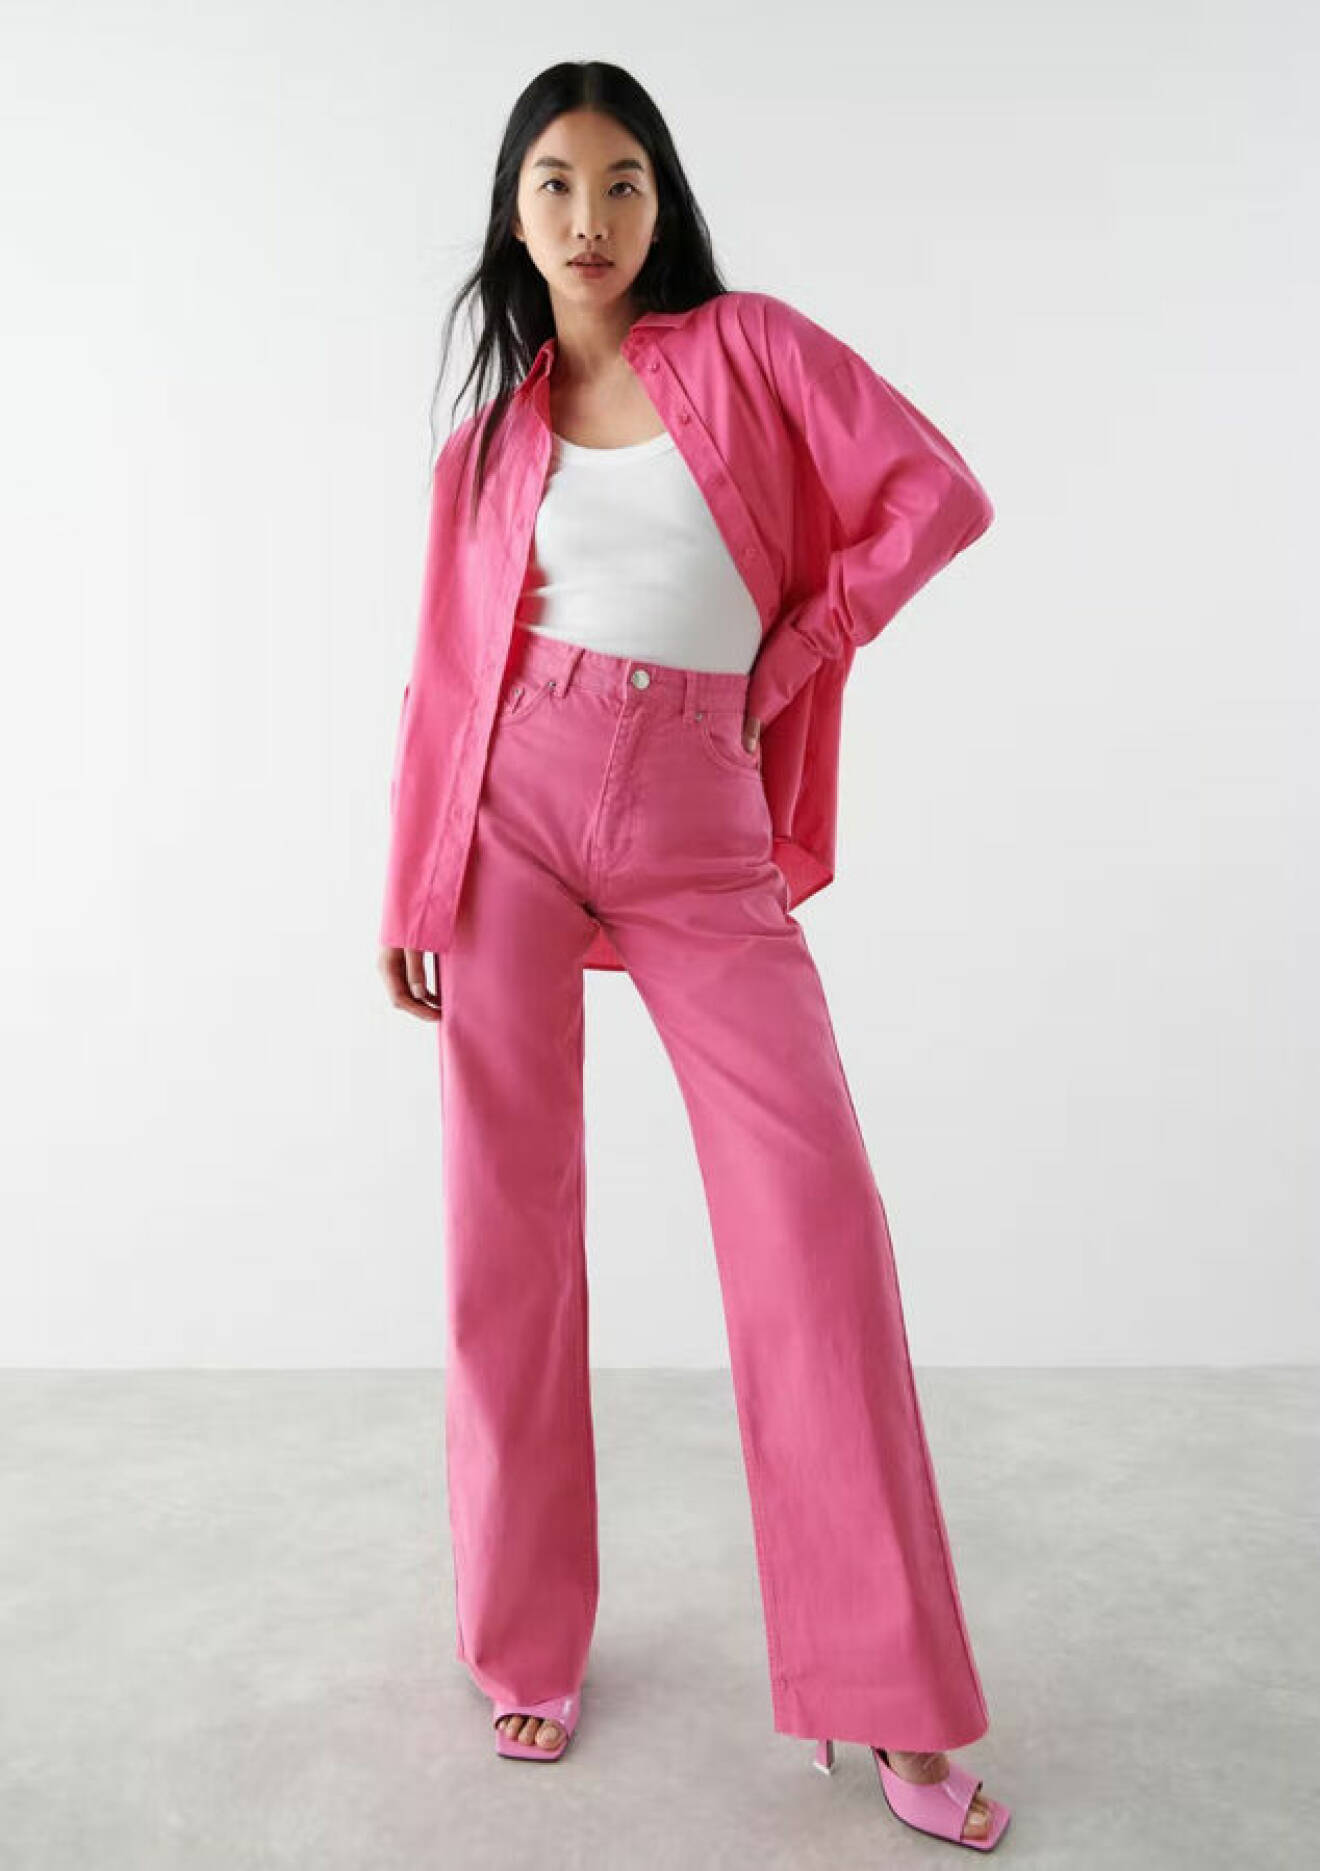 snygg outfit i rött och rosa – rosa jeans från Gina tricot